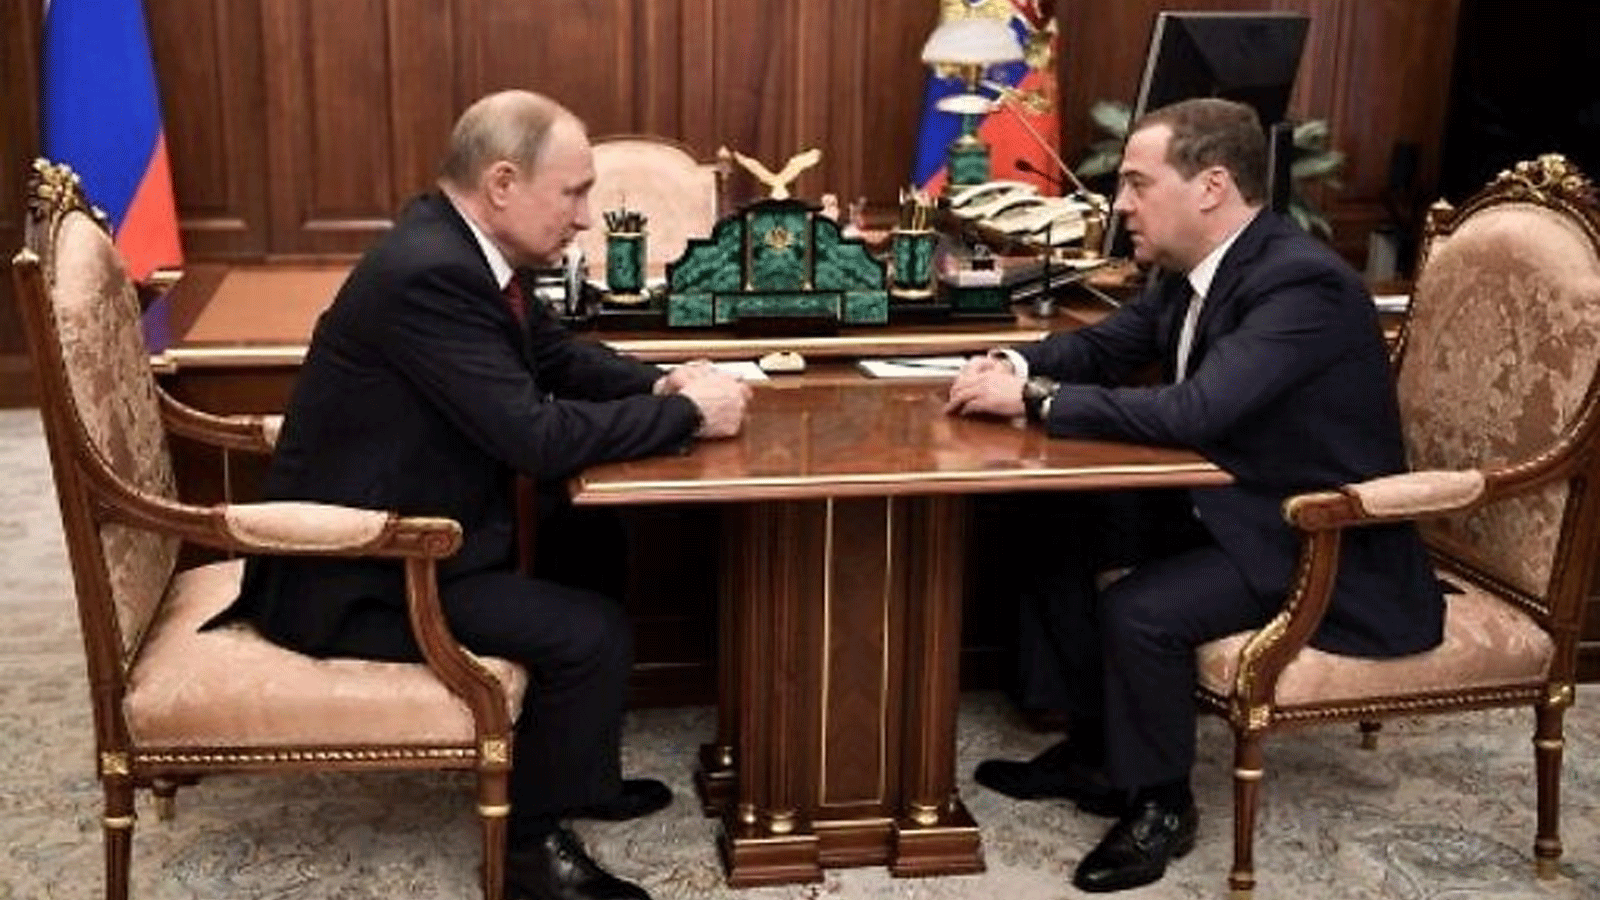 لقطة أرشيفية من اجتماع لبوتين مع ميدفيدف